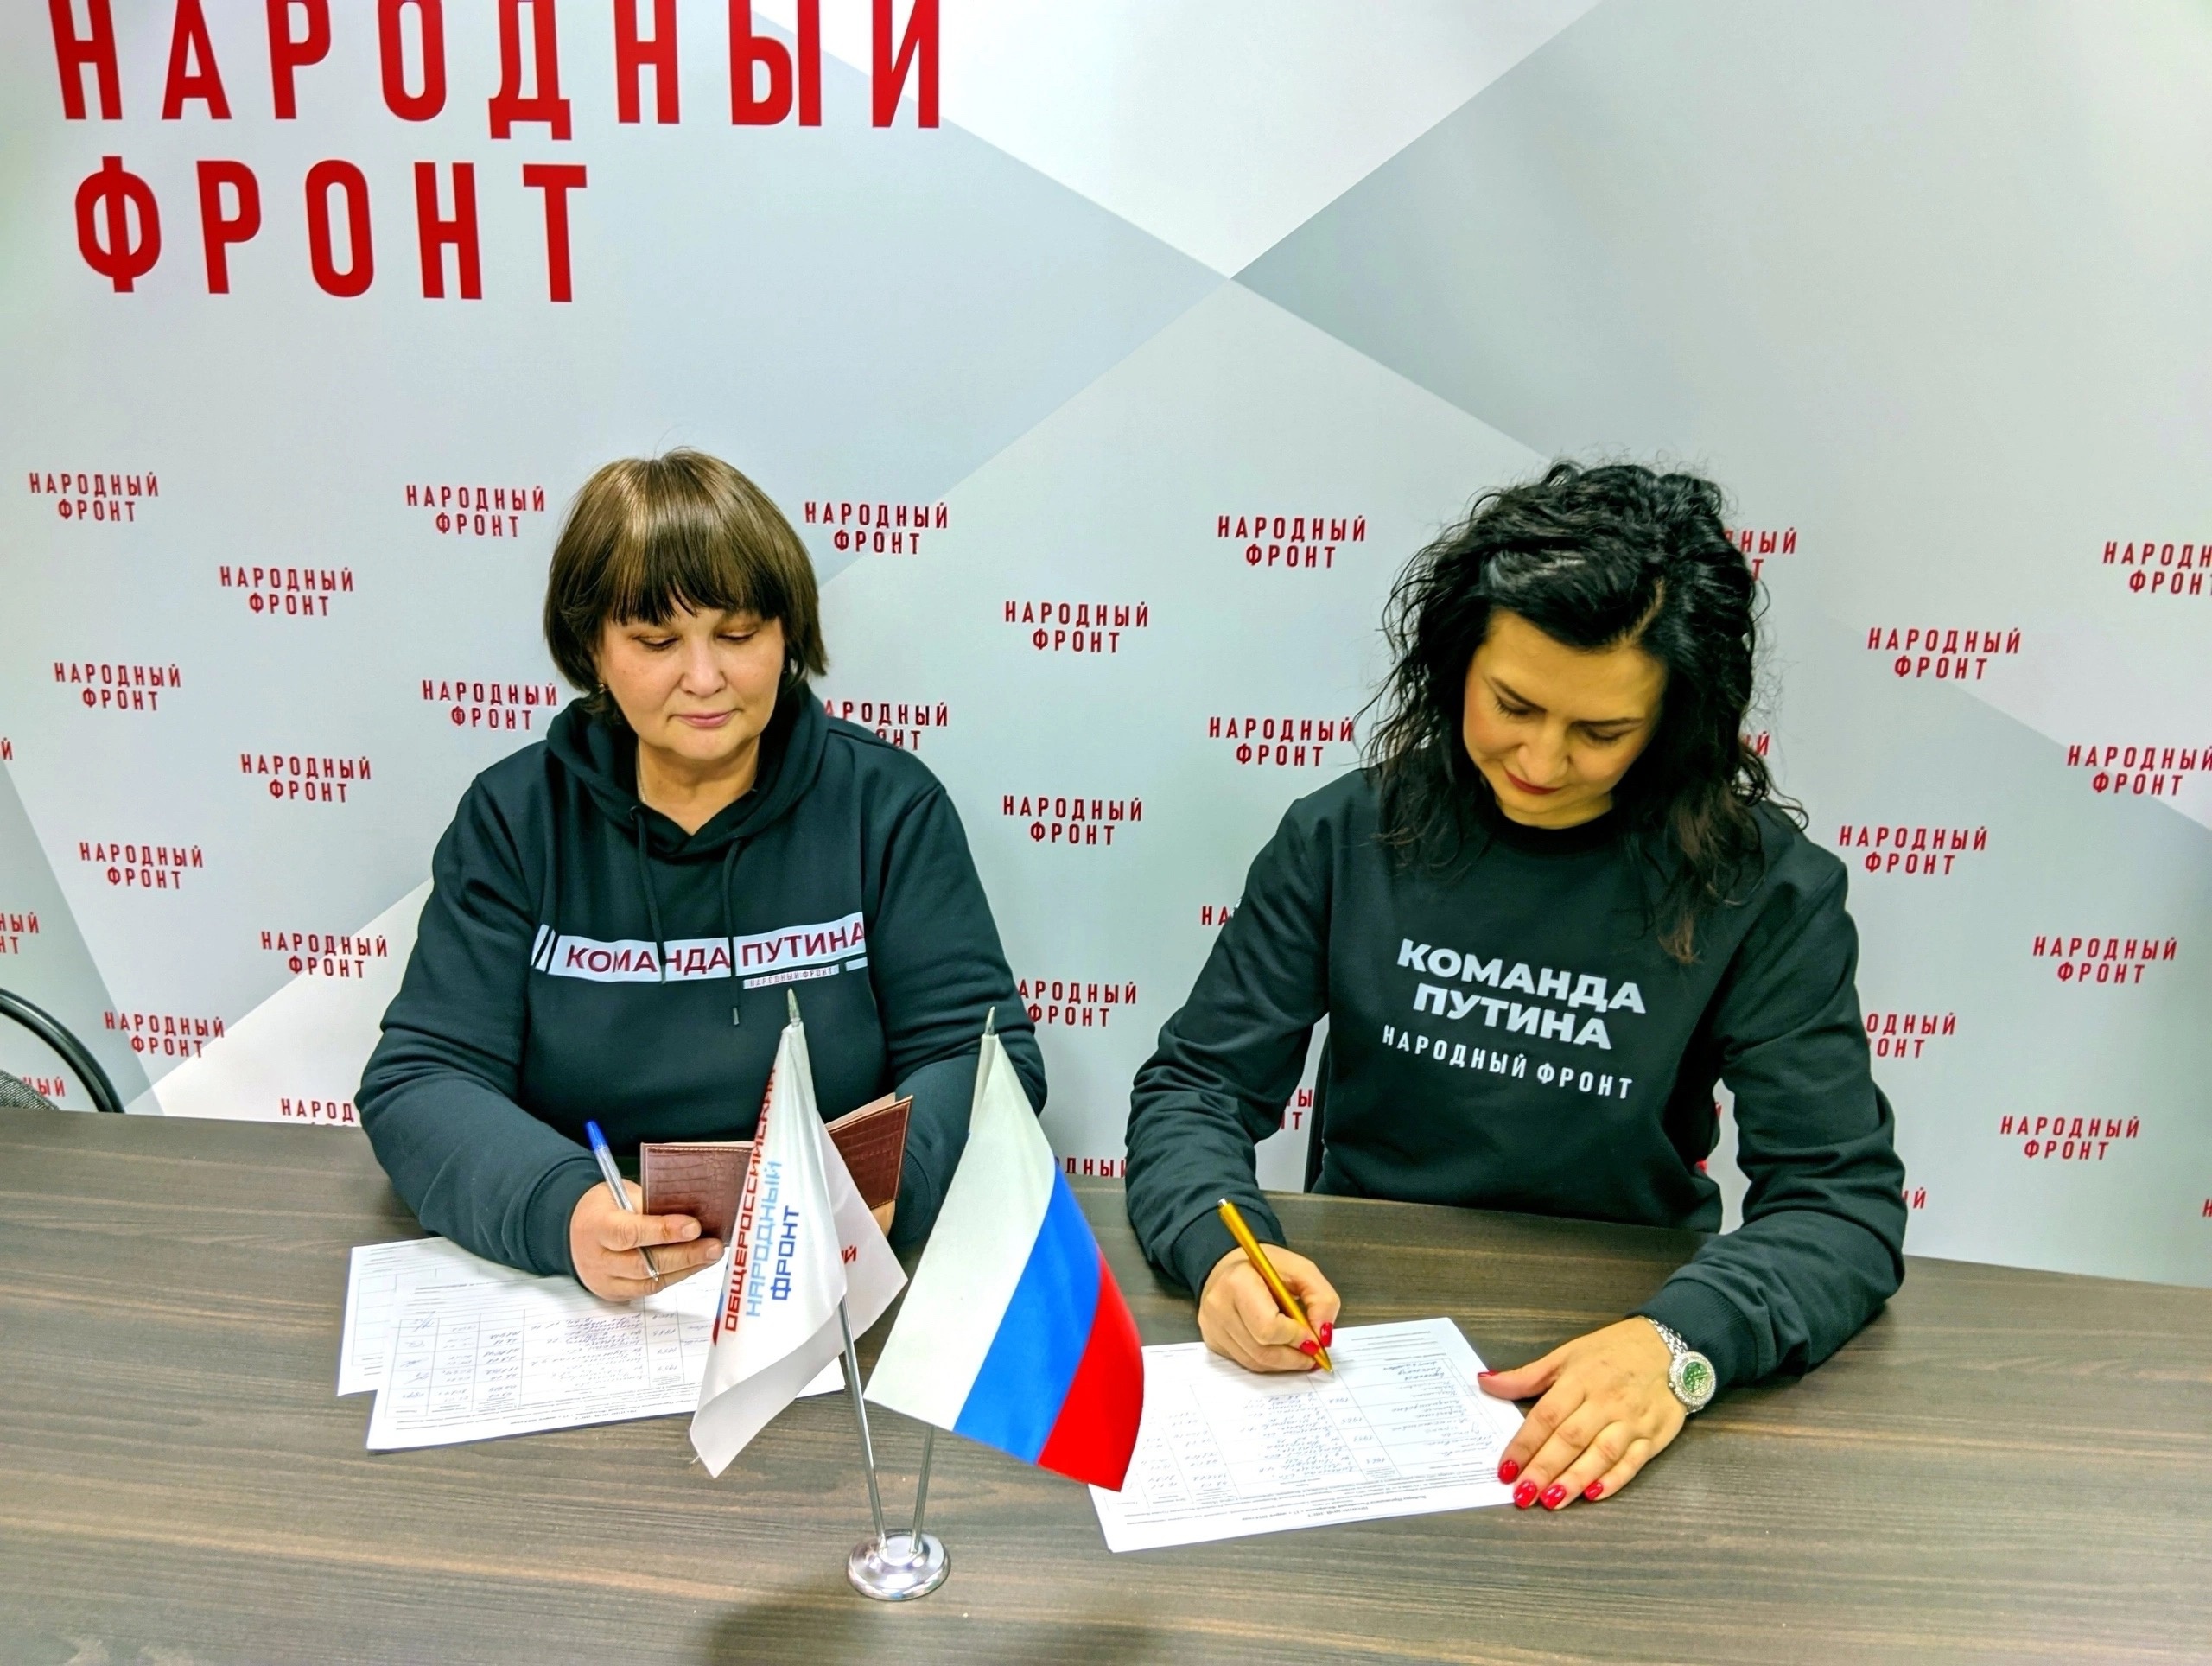 Единый день сбора подписей в поддержку выдвижения Владимира путина на выборах Президента РФ